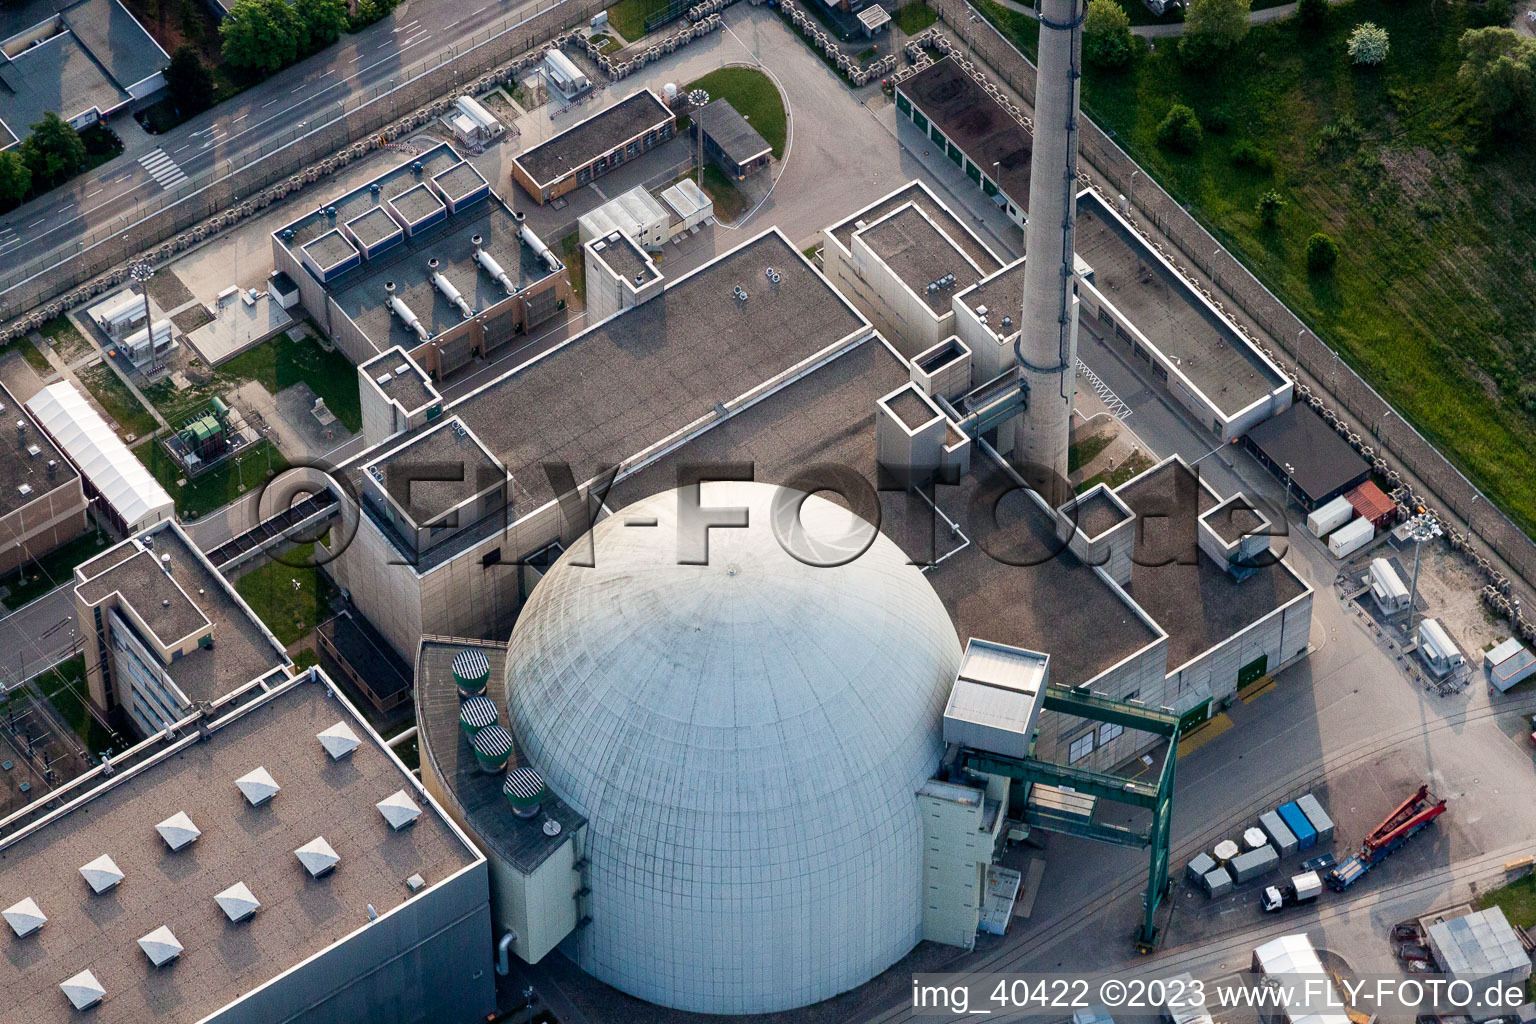 Vue aérienne de Blocs de réacteurs, structures et systèmes de tour de refroidissement de la centrale nucléaire - centrale nucléaire - centrale nucléaire d'EnBW Kernkraft GmbH, centrale nucléaire Philippsburg sur l'île de Rheinschanz à Philippsburg dans le département Bade-Wurtemberg, Allemagne